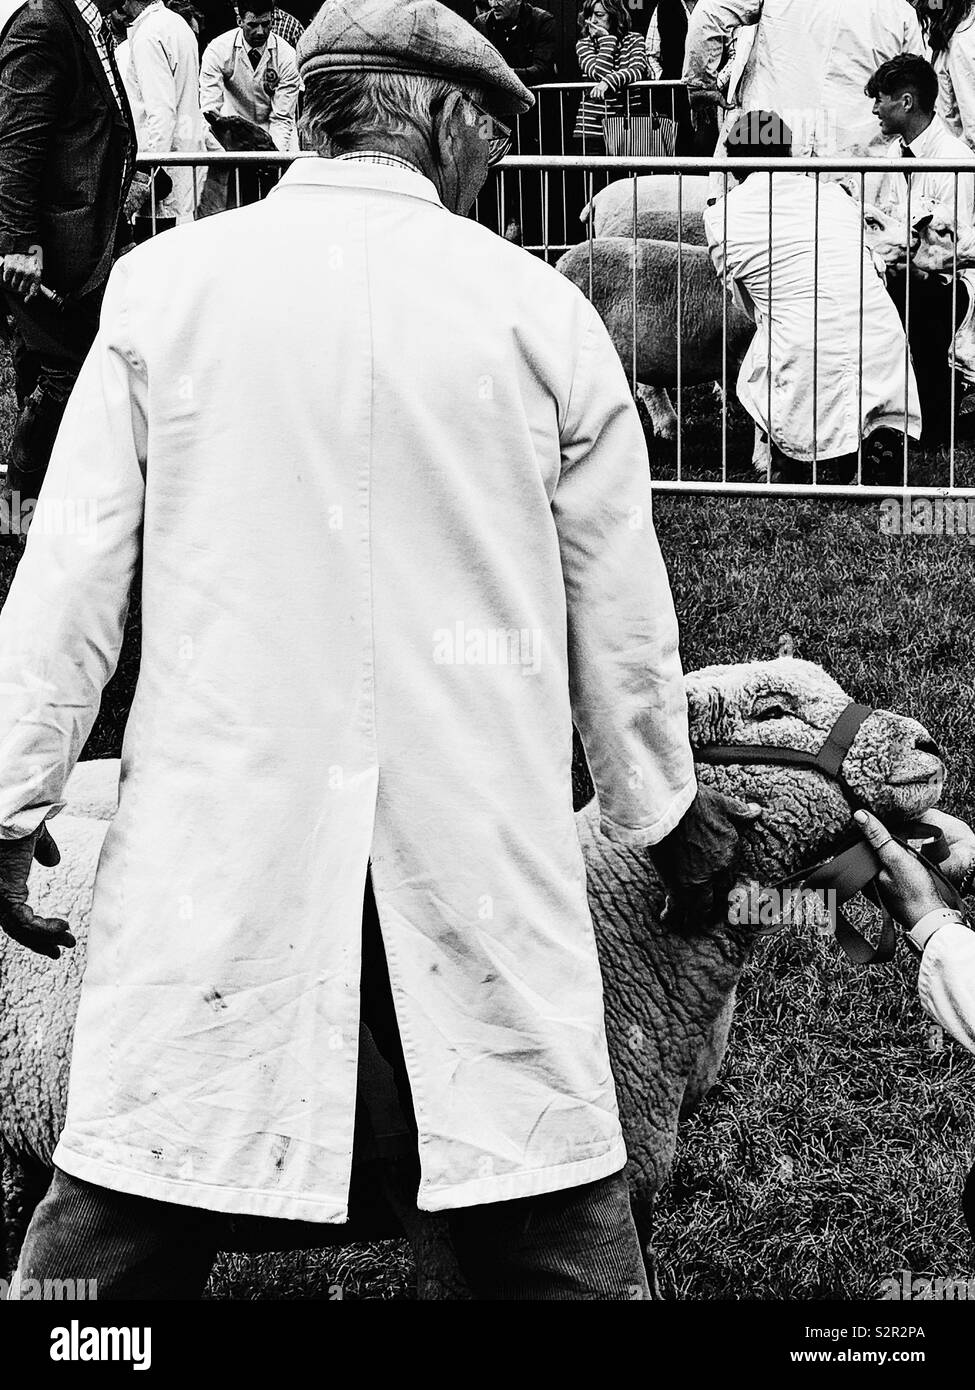 Schafe Handler im weißen Mantel und flacher Deckel und Schafe in Halter, drei Grafschaften zeigen, Malvern, Worcestershire, England Stockfoto